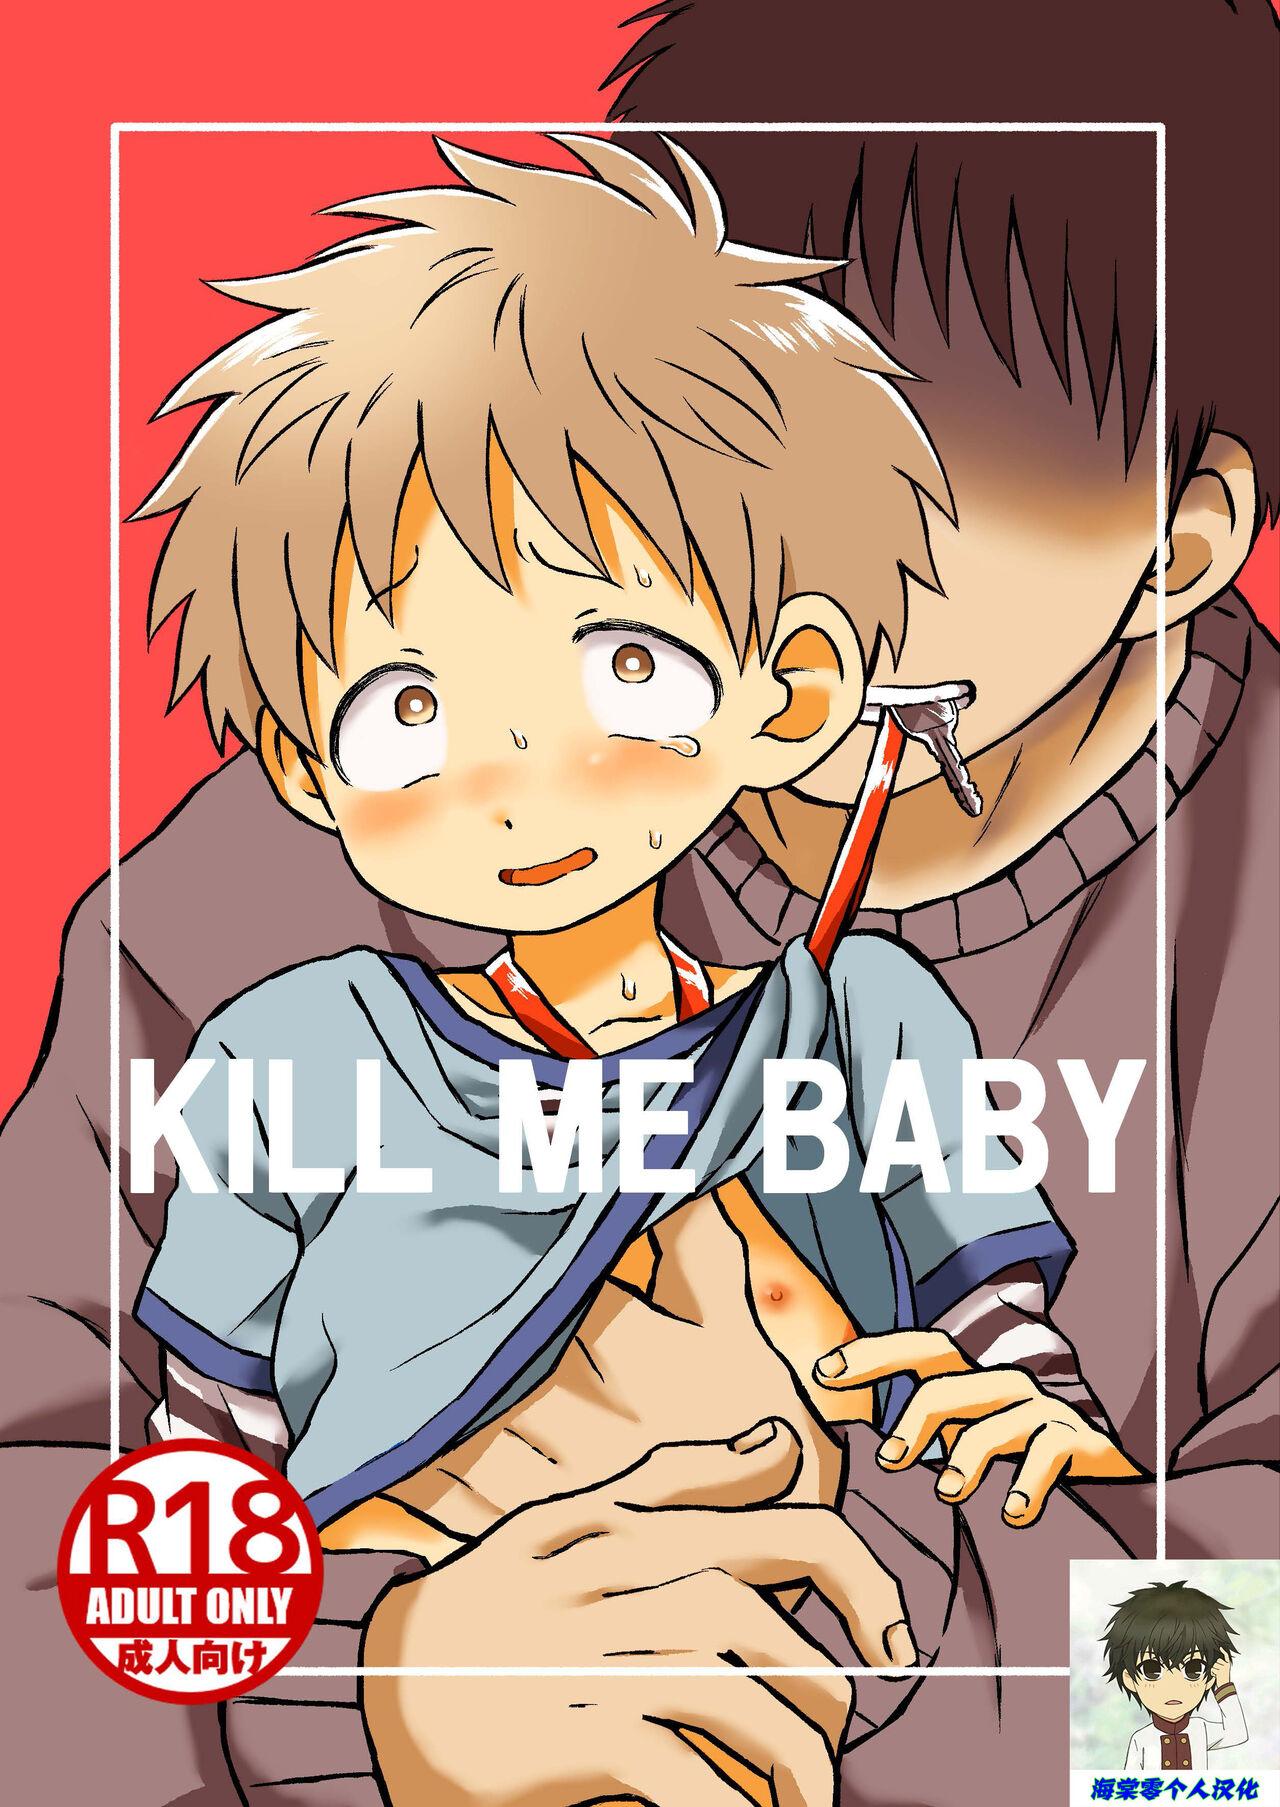 KILL ME BABY 0